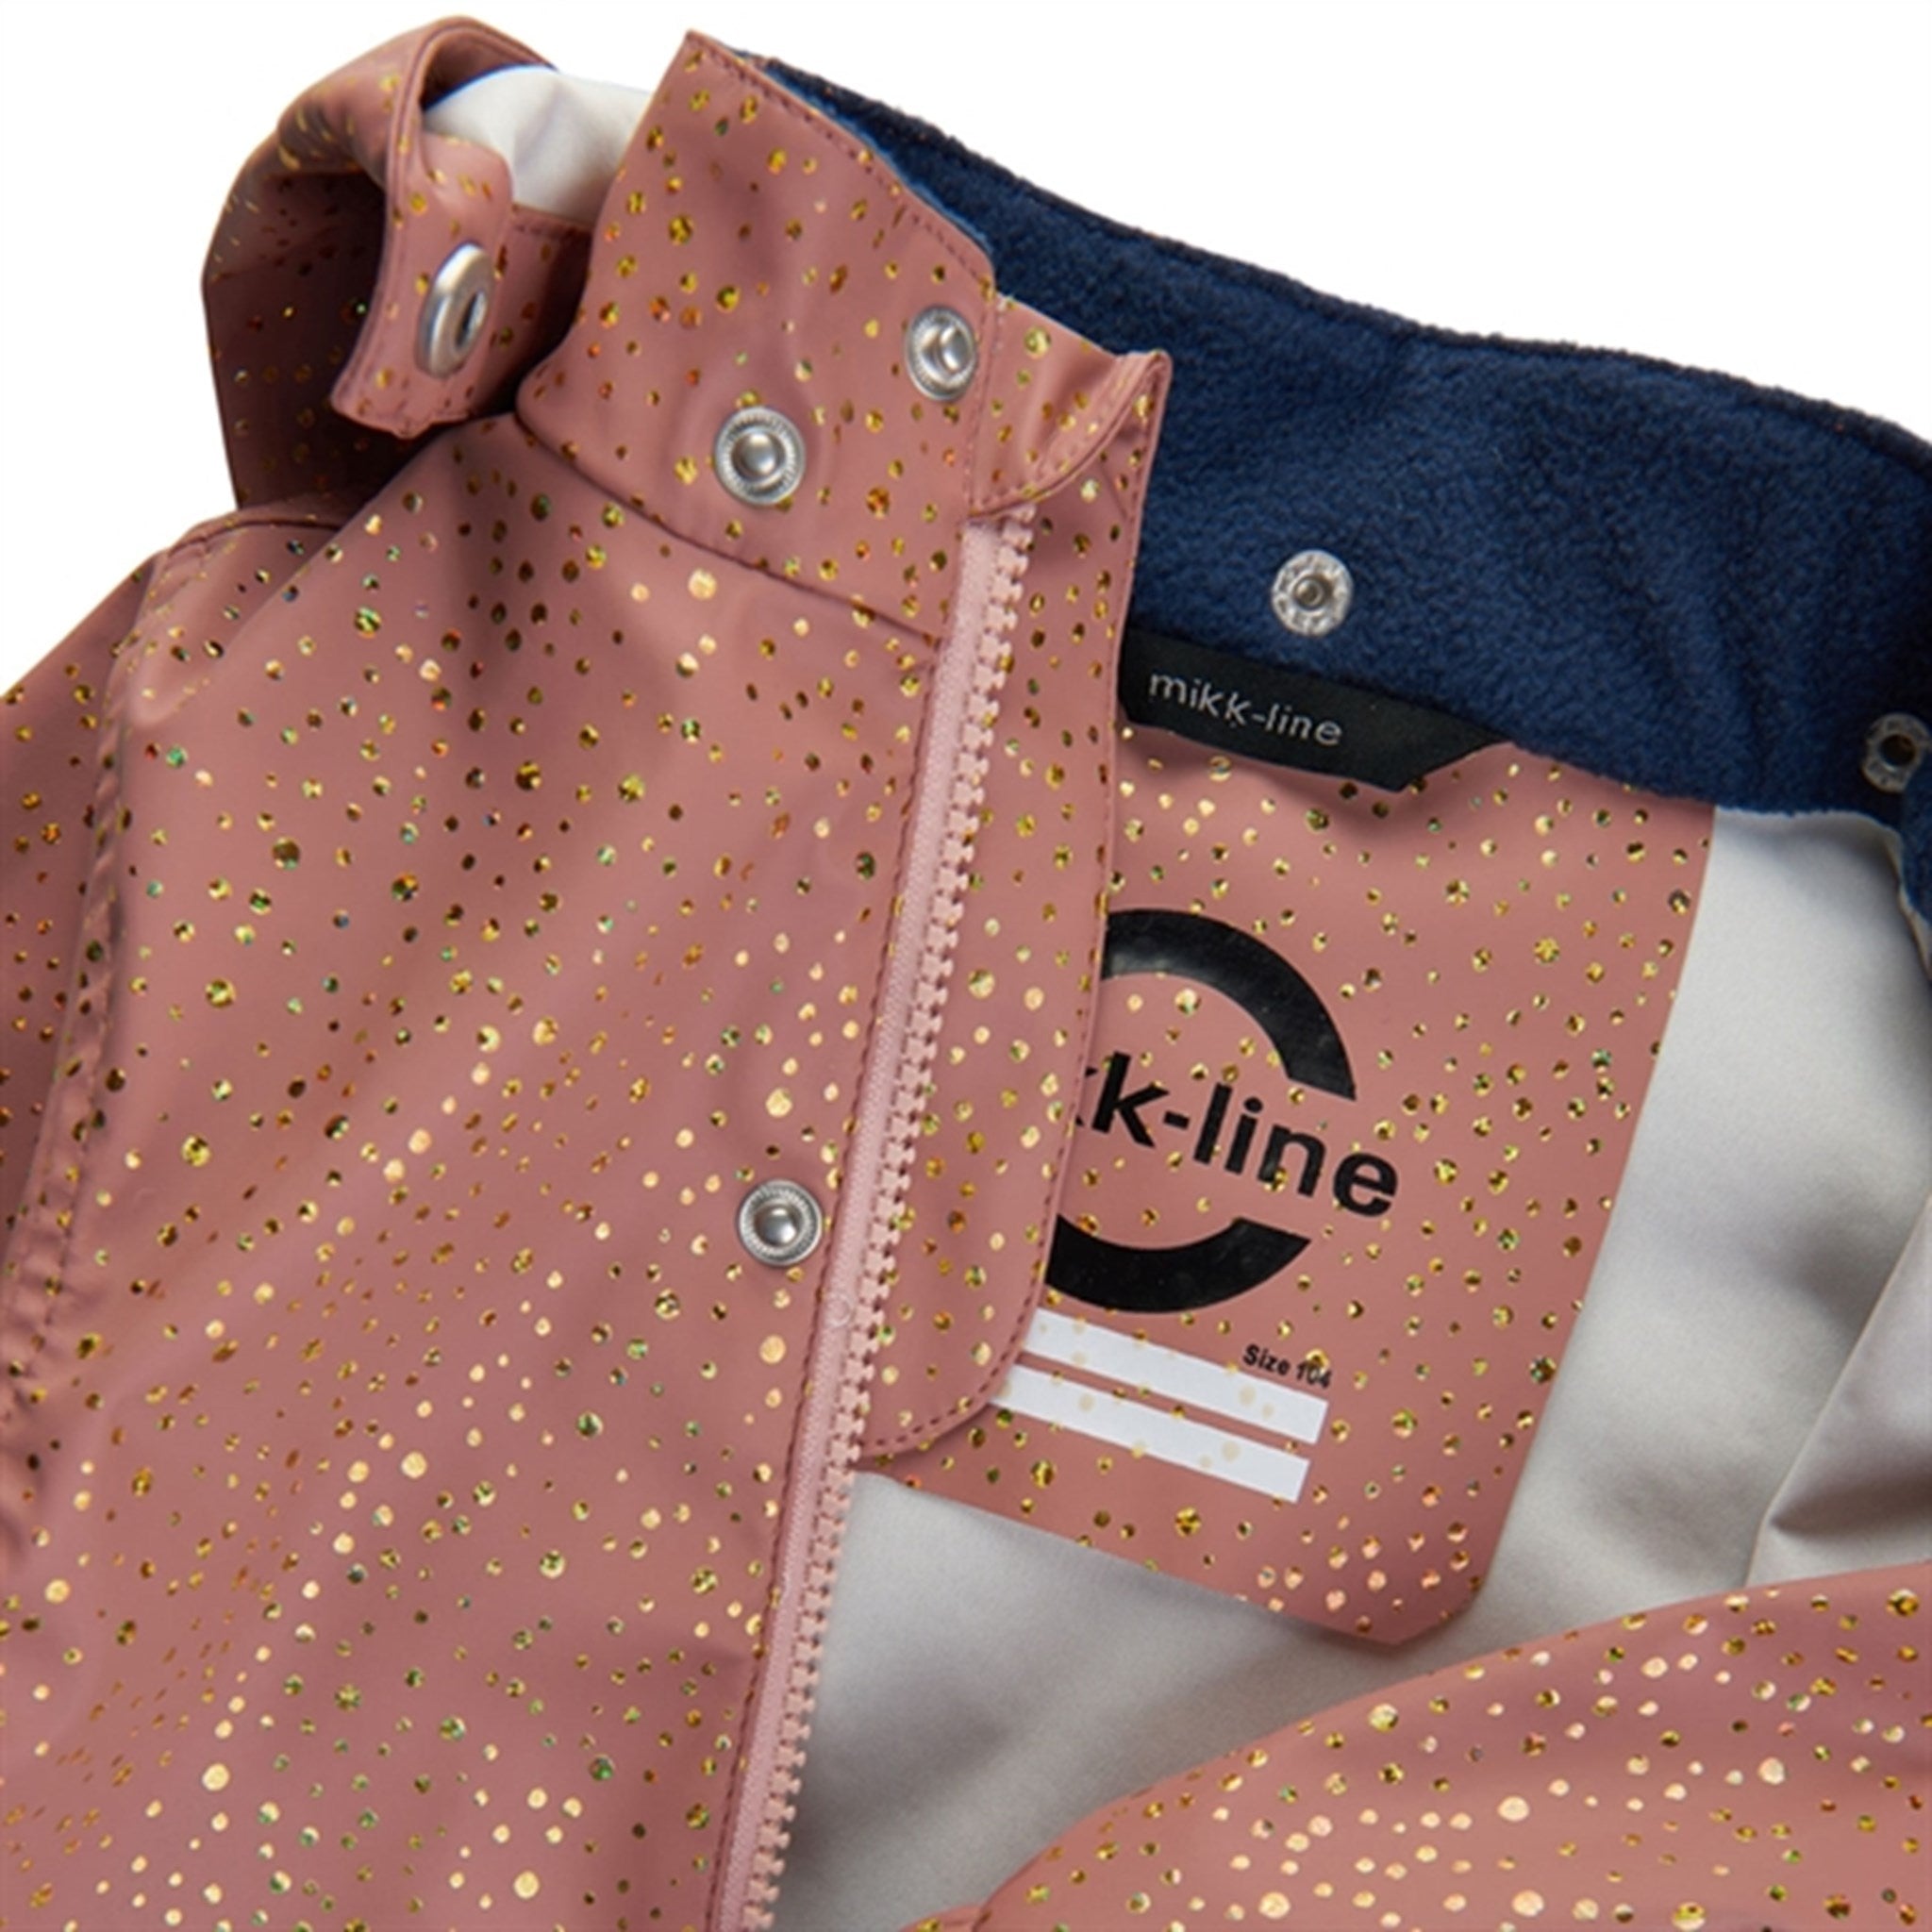 Mikk-Line Rainwear Jacket And Pants Burlwood Glitter 3